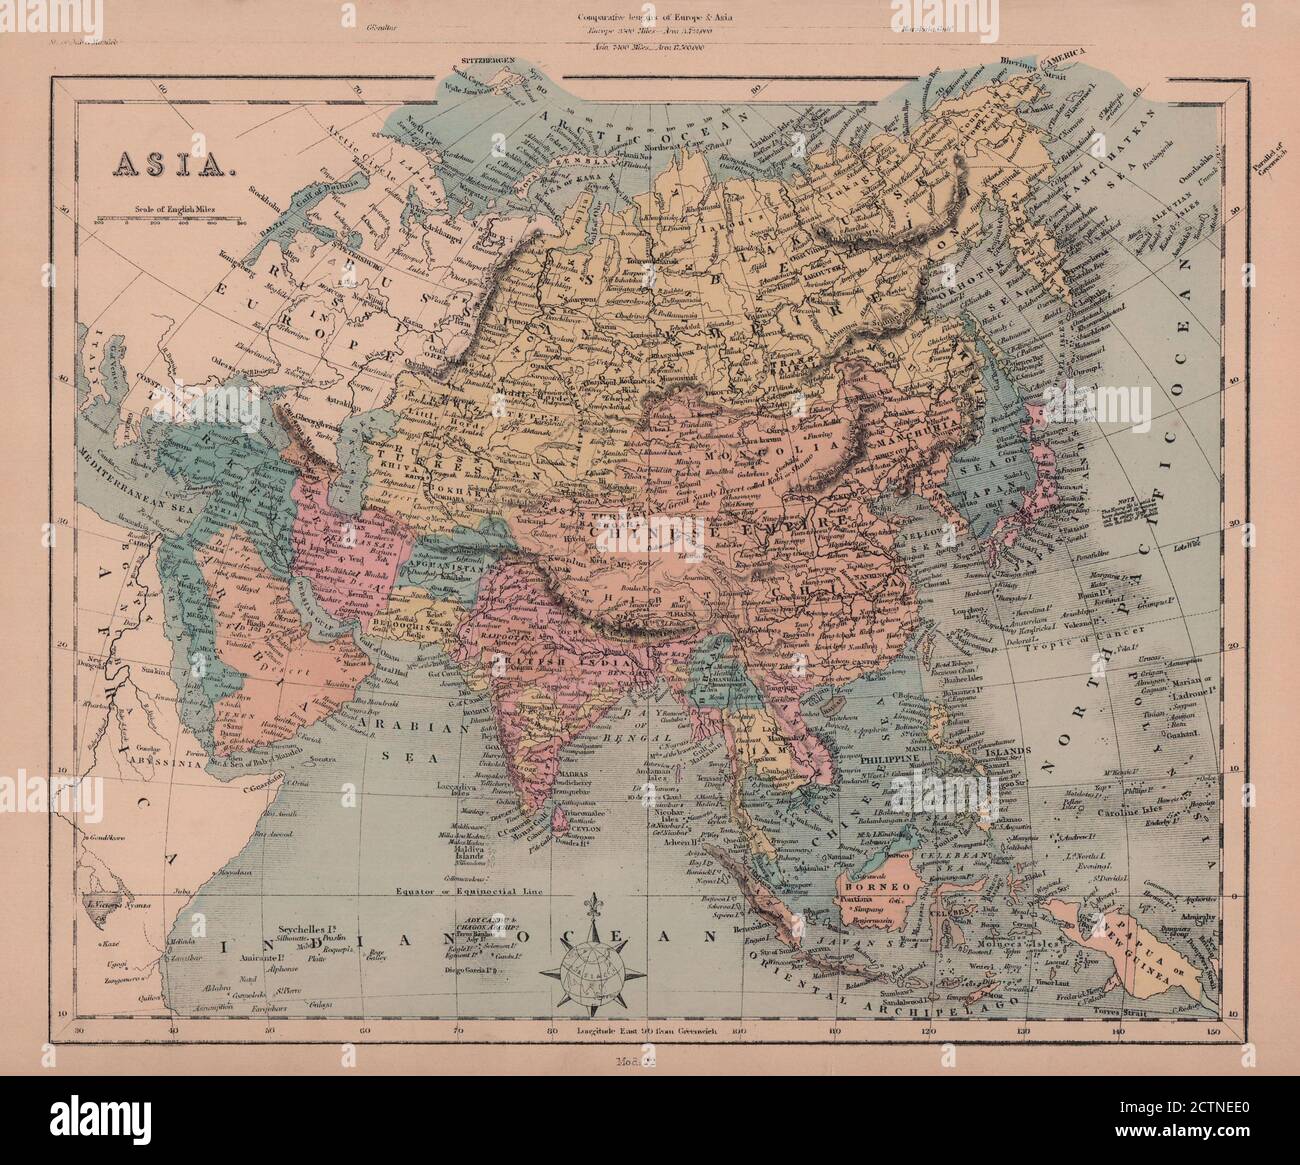 Asia. British India Siam Annam Burmah Persia Arabia.HUGHES 1876 old map Stock Photo